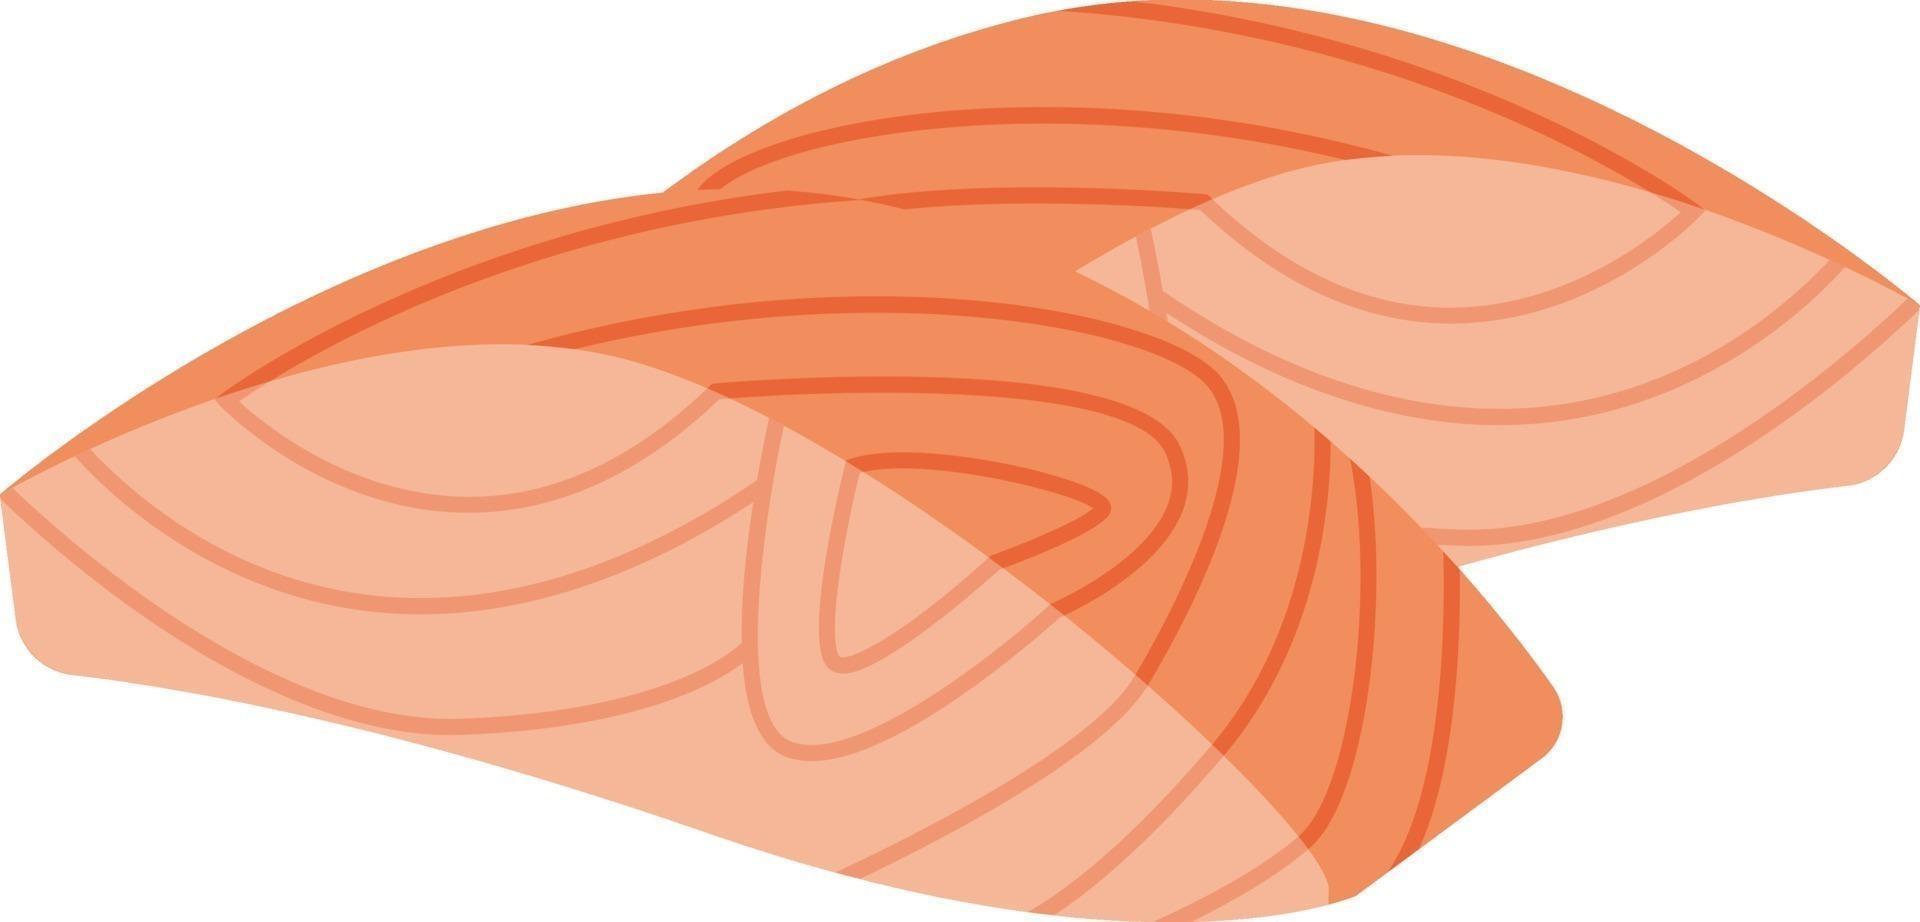 filetes de pescado, ilustración, vector sobre fondo blanco